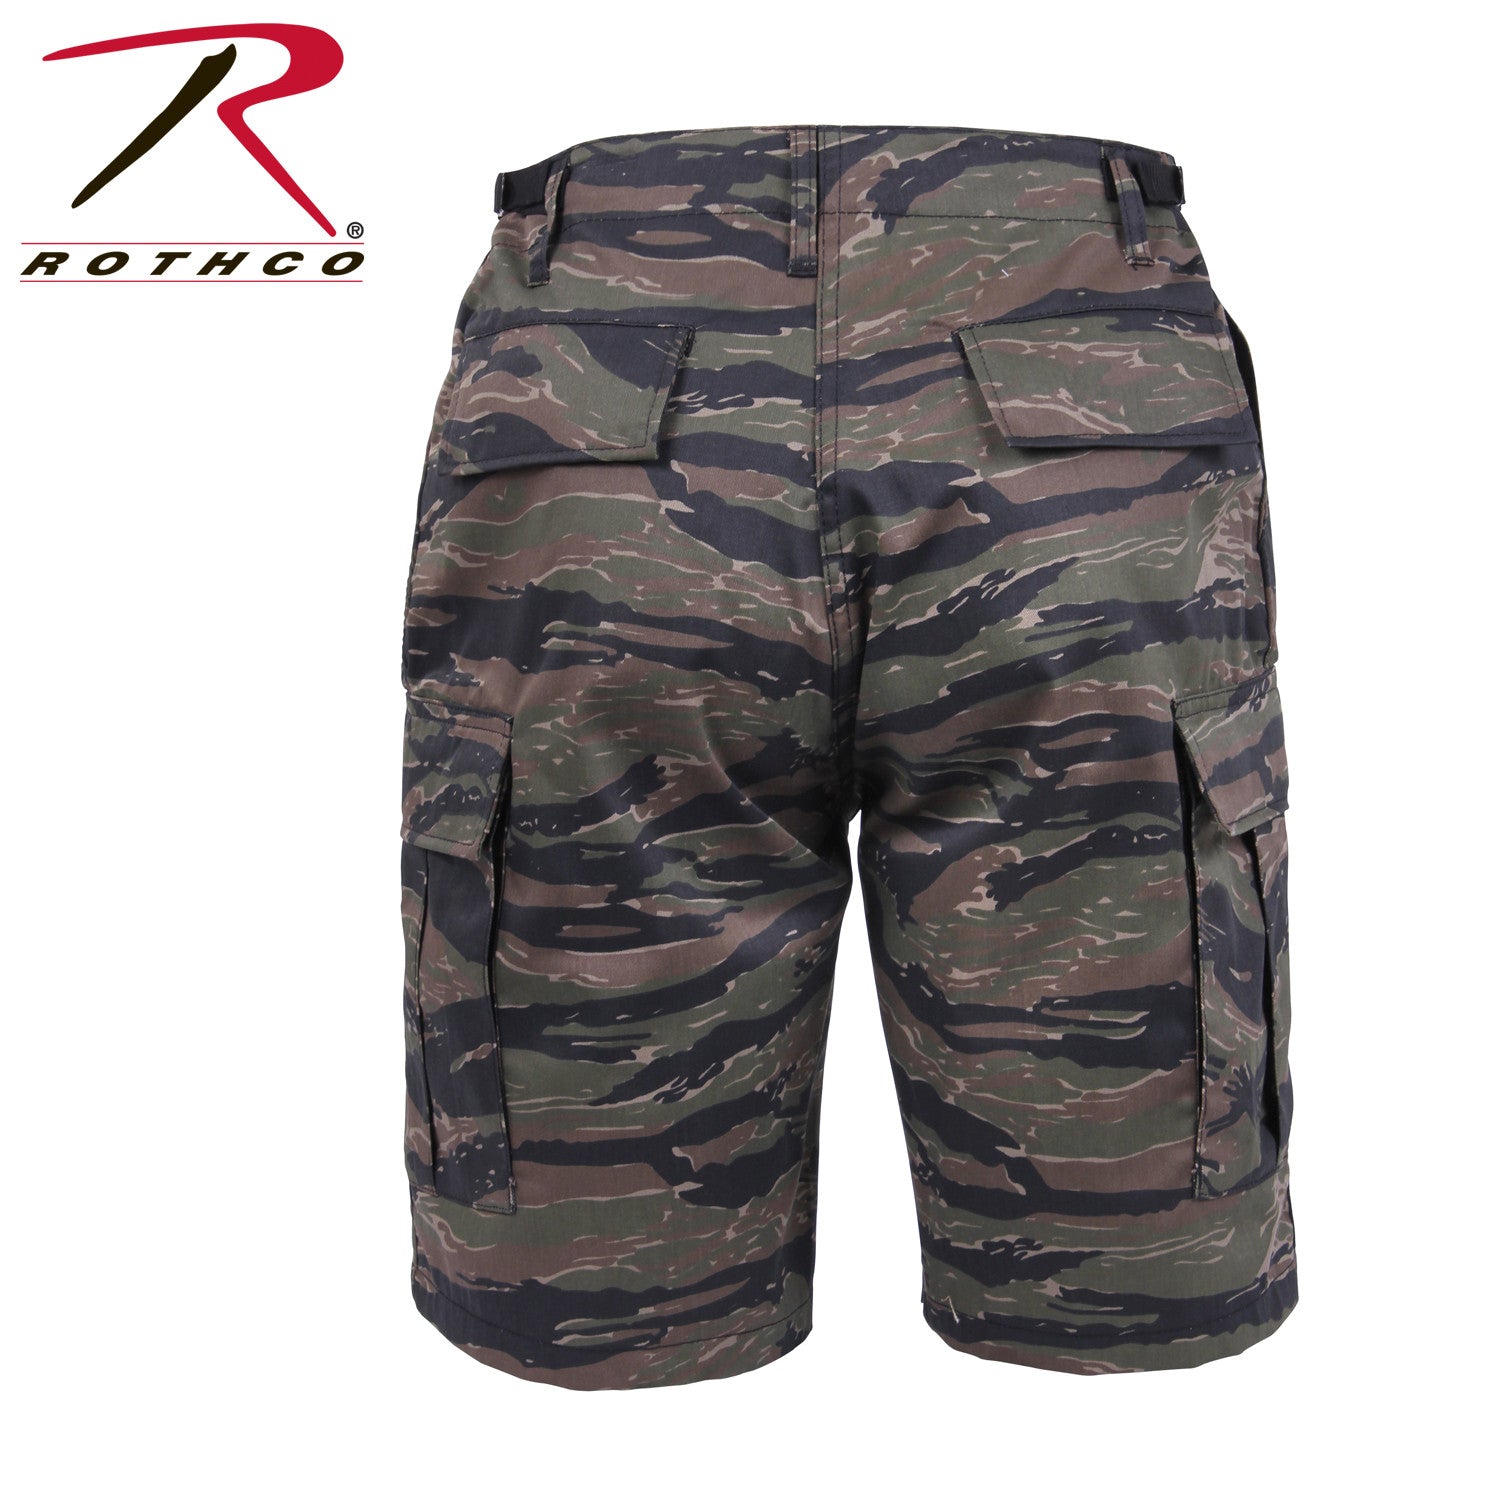 Rothco Camo Shorts, BDU Cargo Shorts